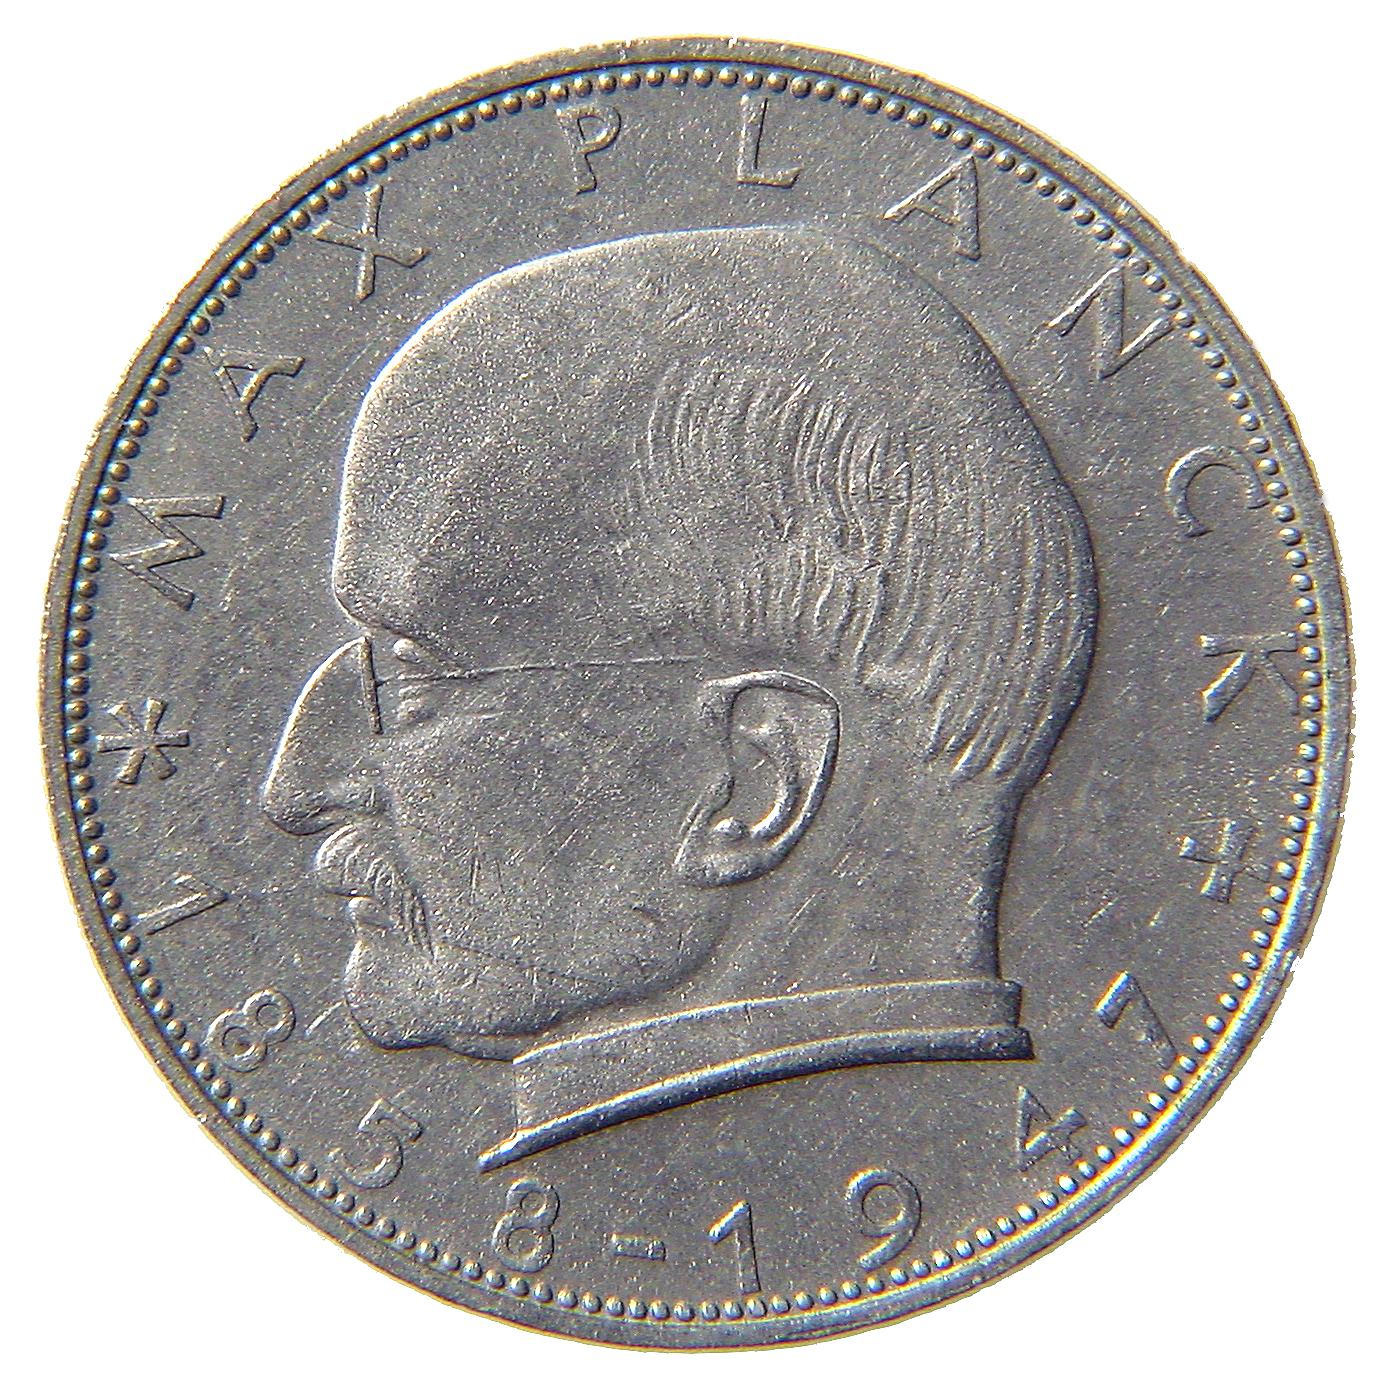 2-DM Münze Planck - Vorderseite